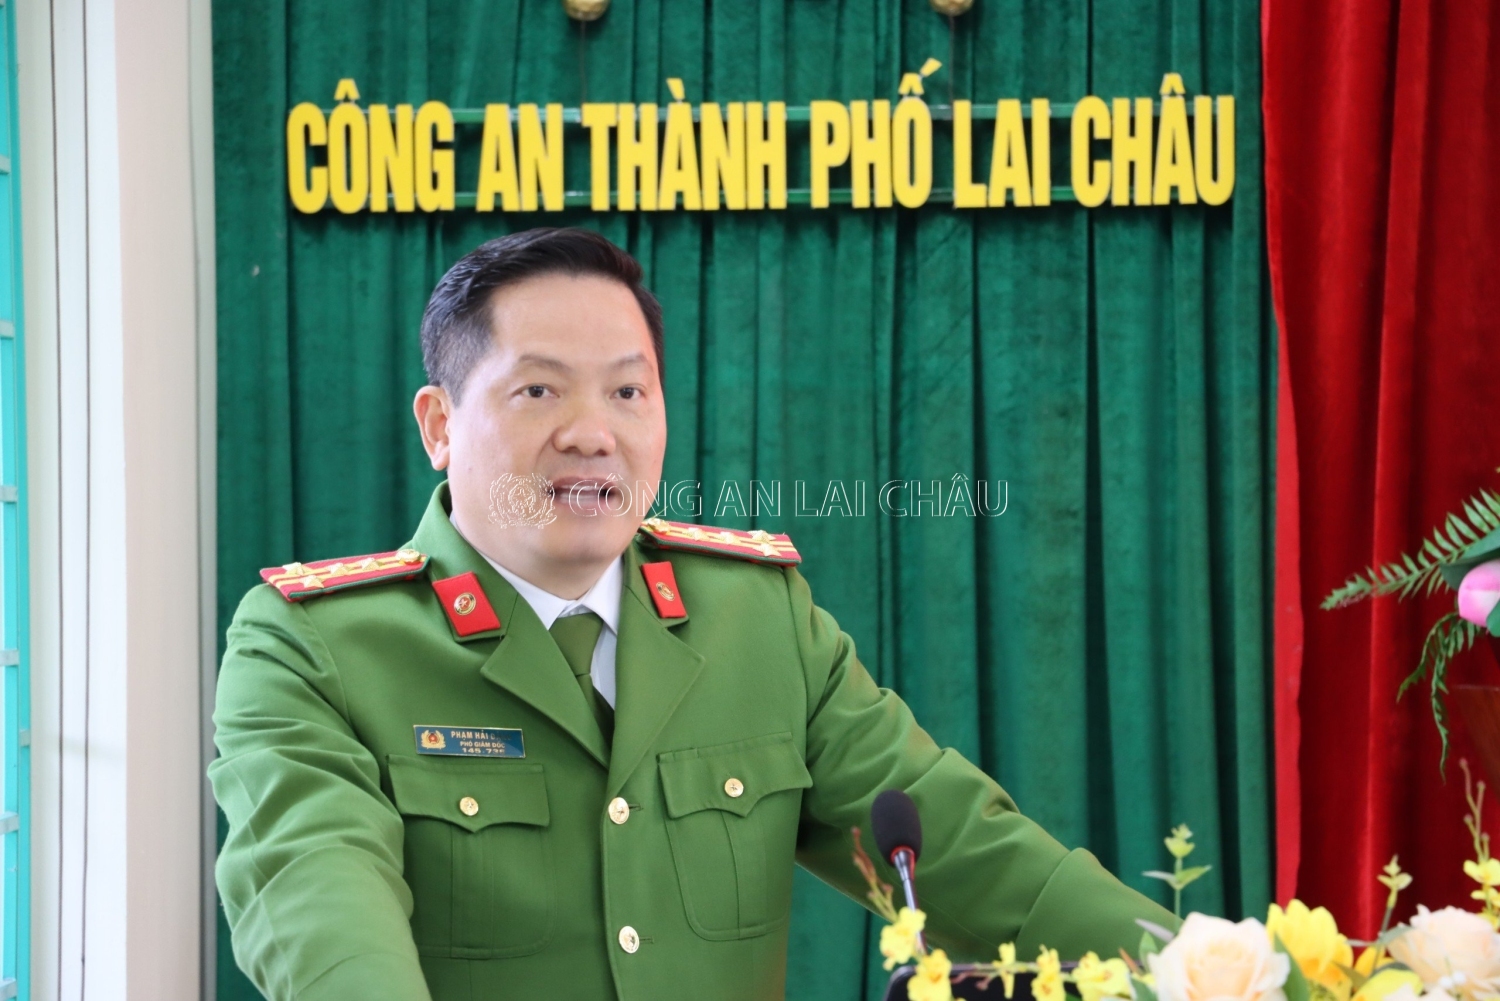 Đại tá Phạm Hải Đăng, Phó Trưởng ban Chỉ đạo PCTP tỉnh - Phó giám đốc công an tỉnh phát biểu chỉ đạo tại Hội nghị